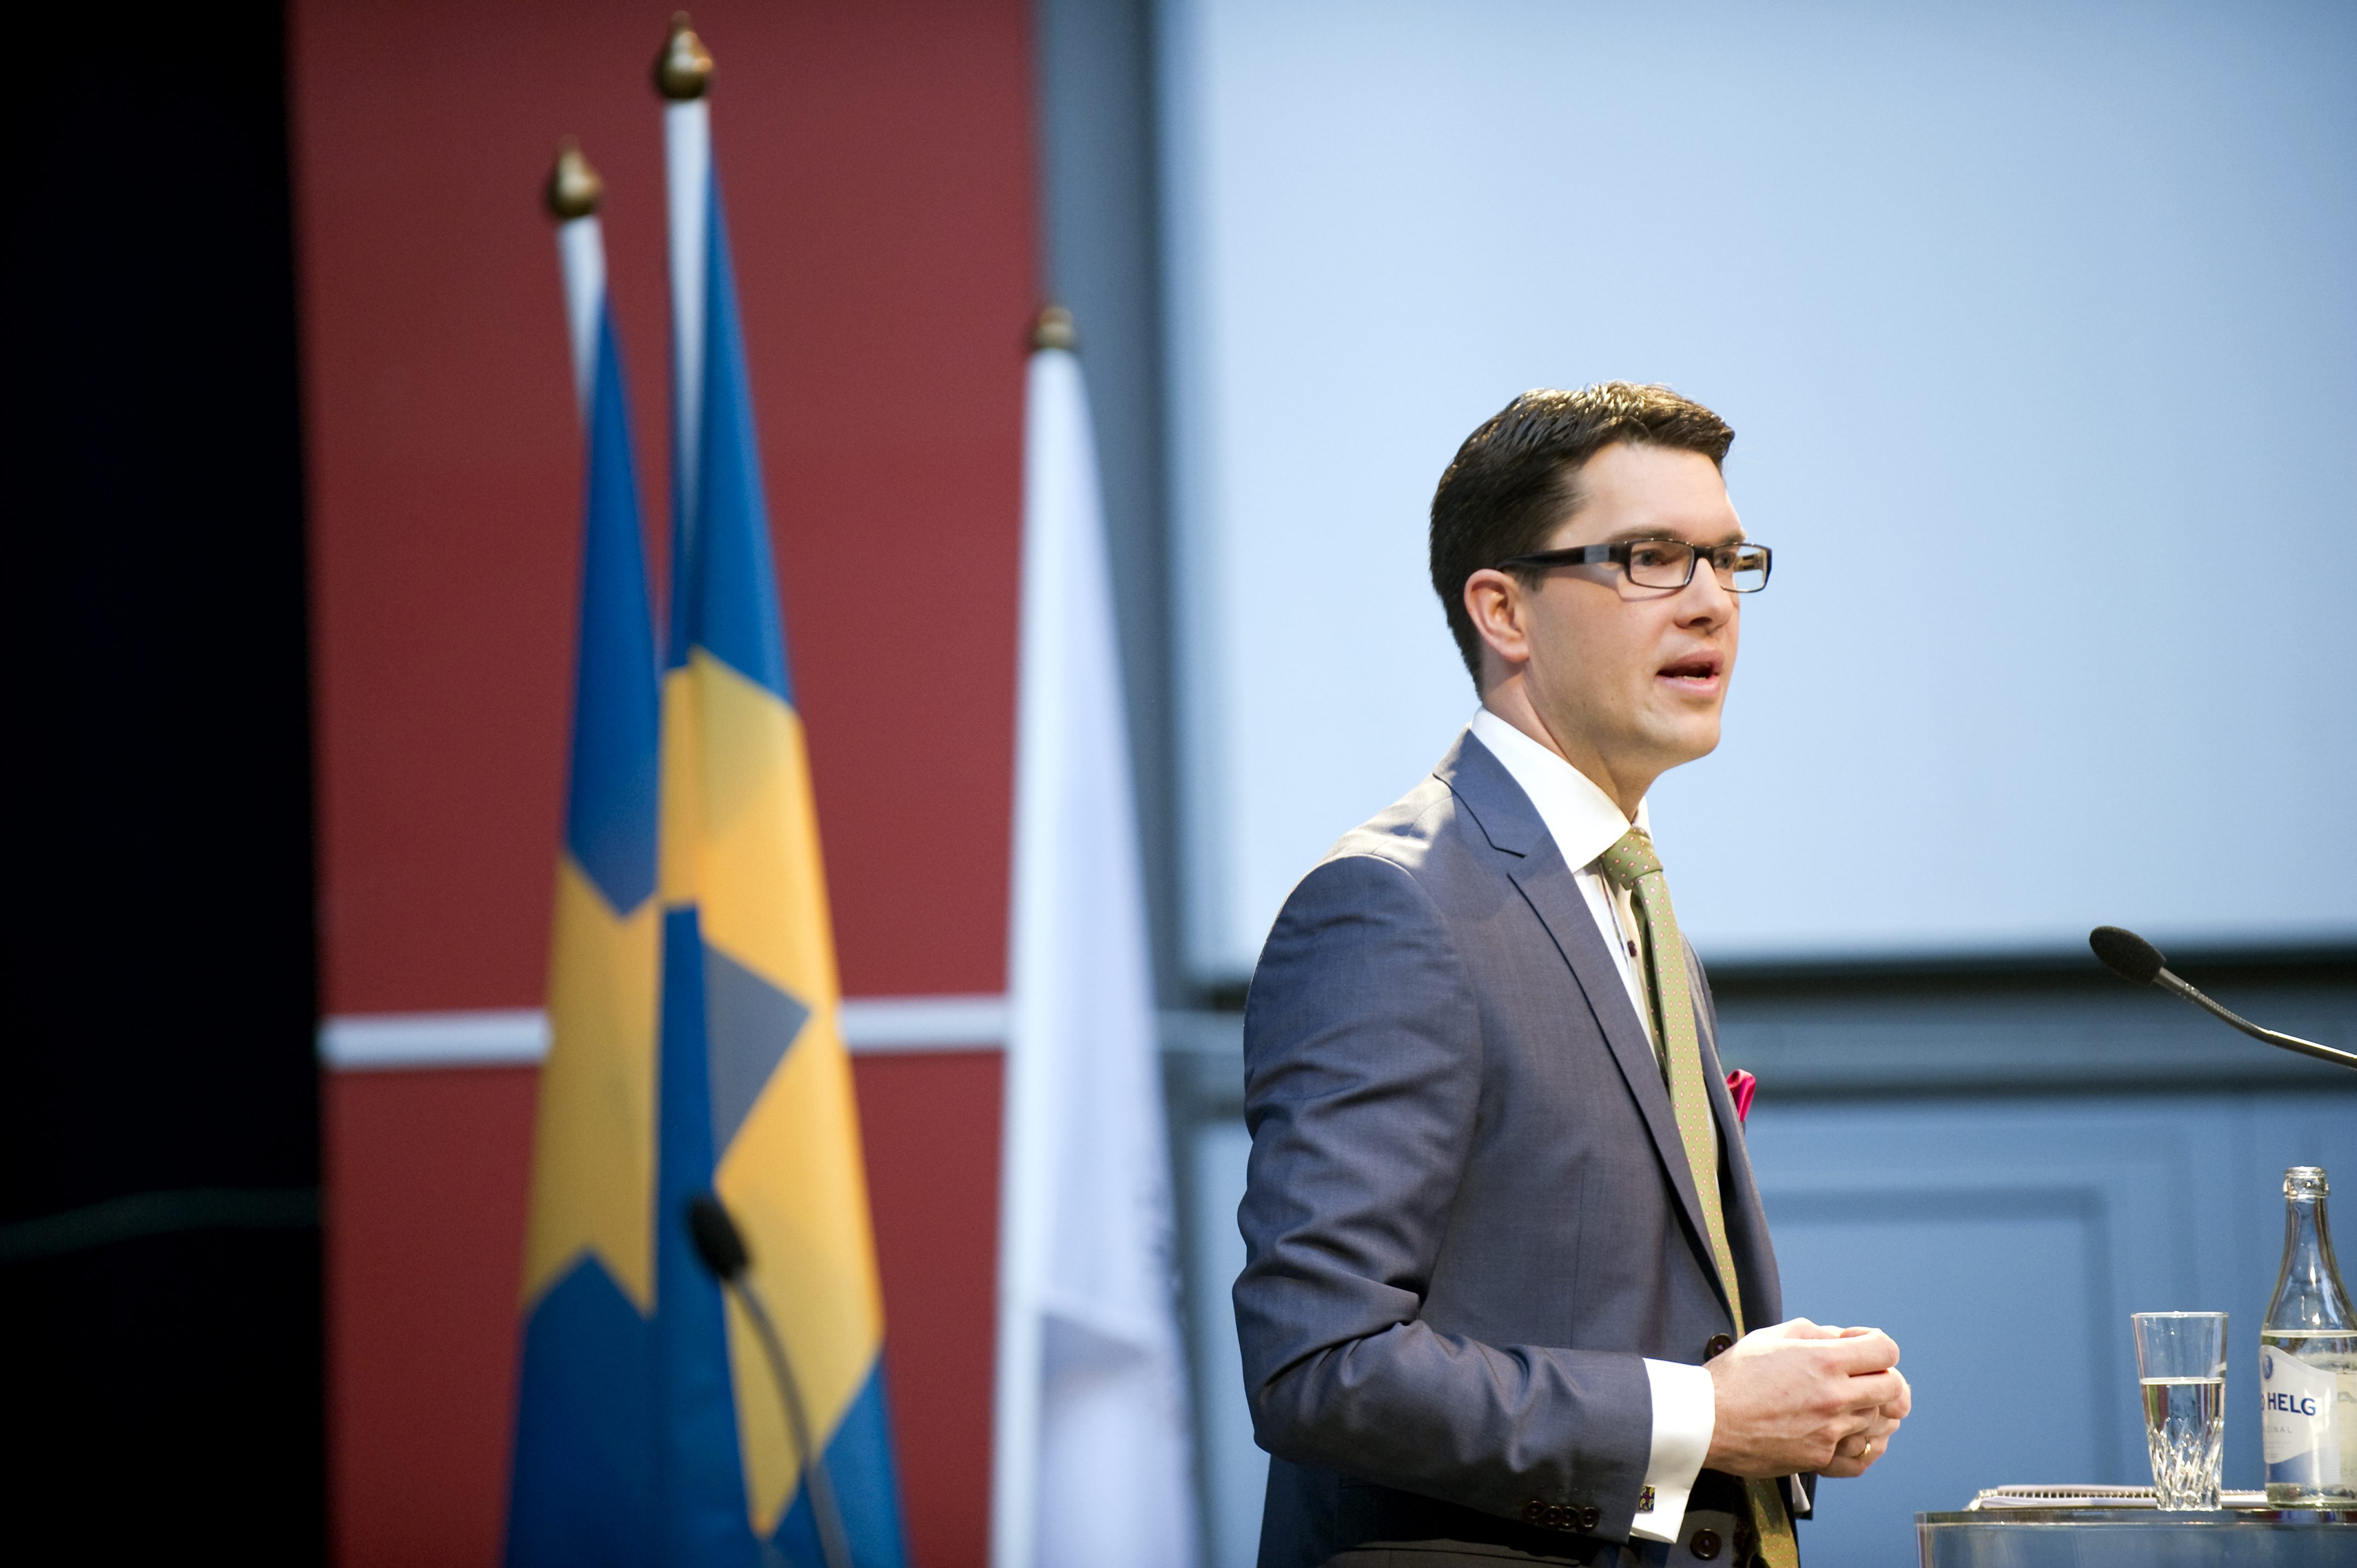 SD:s partiledare Jimmie Åkesson har tidigare kritiserat sina partikollegor i Södertälje för att vara för invandrarvänliga.